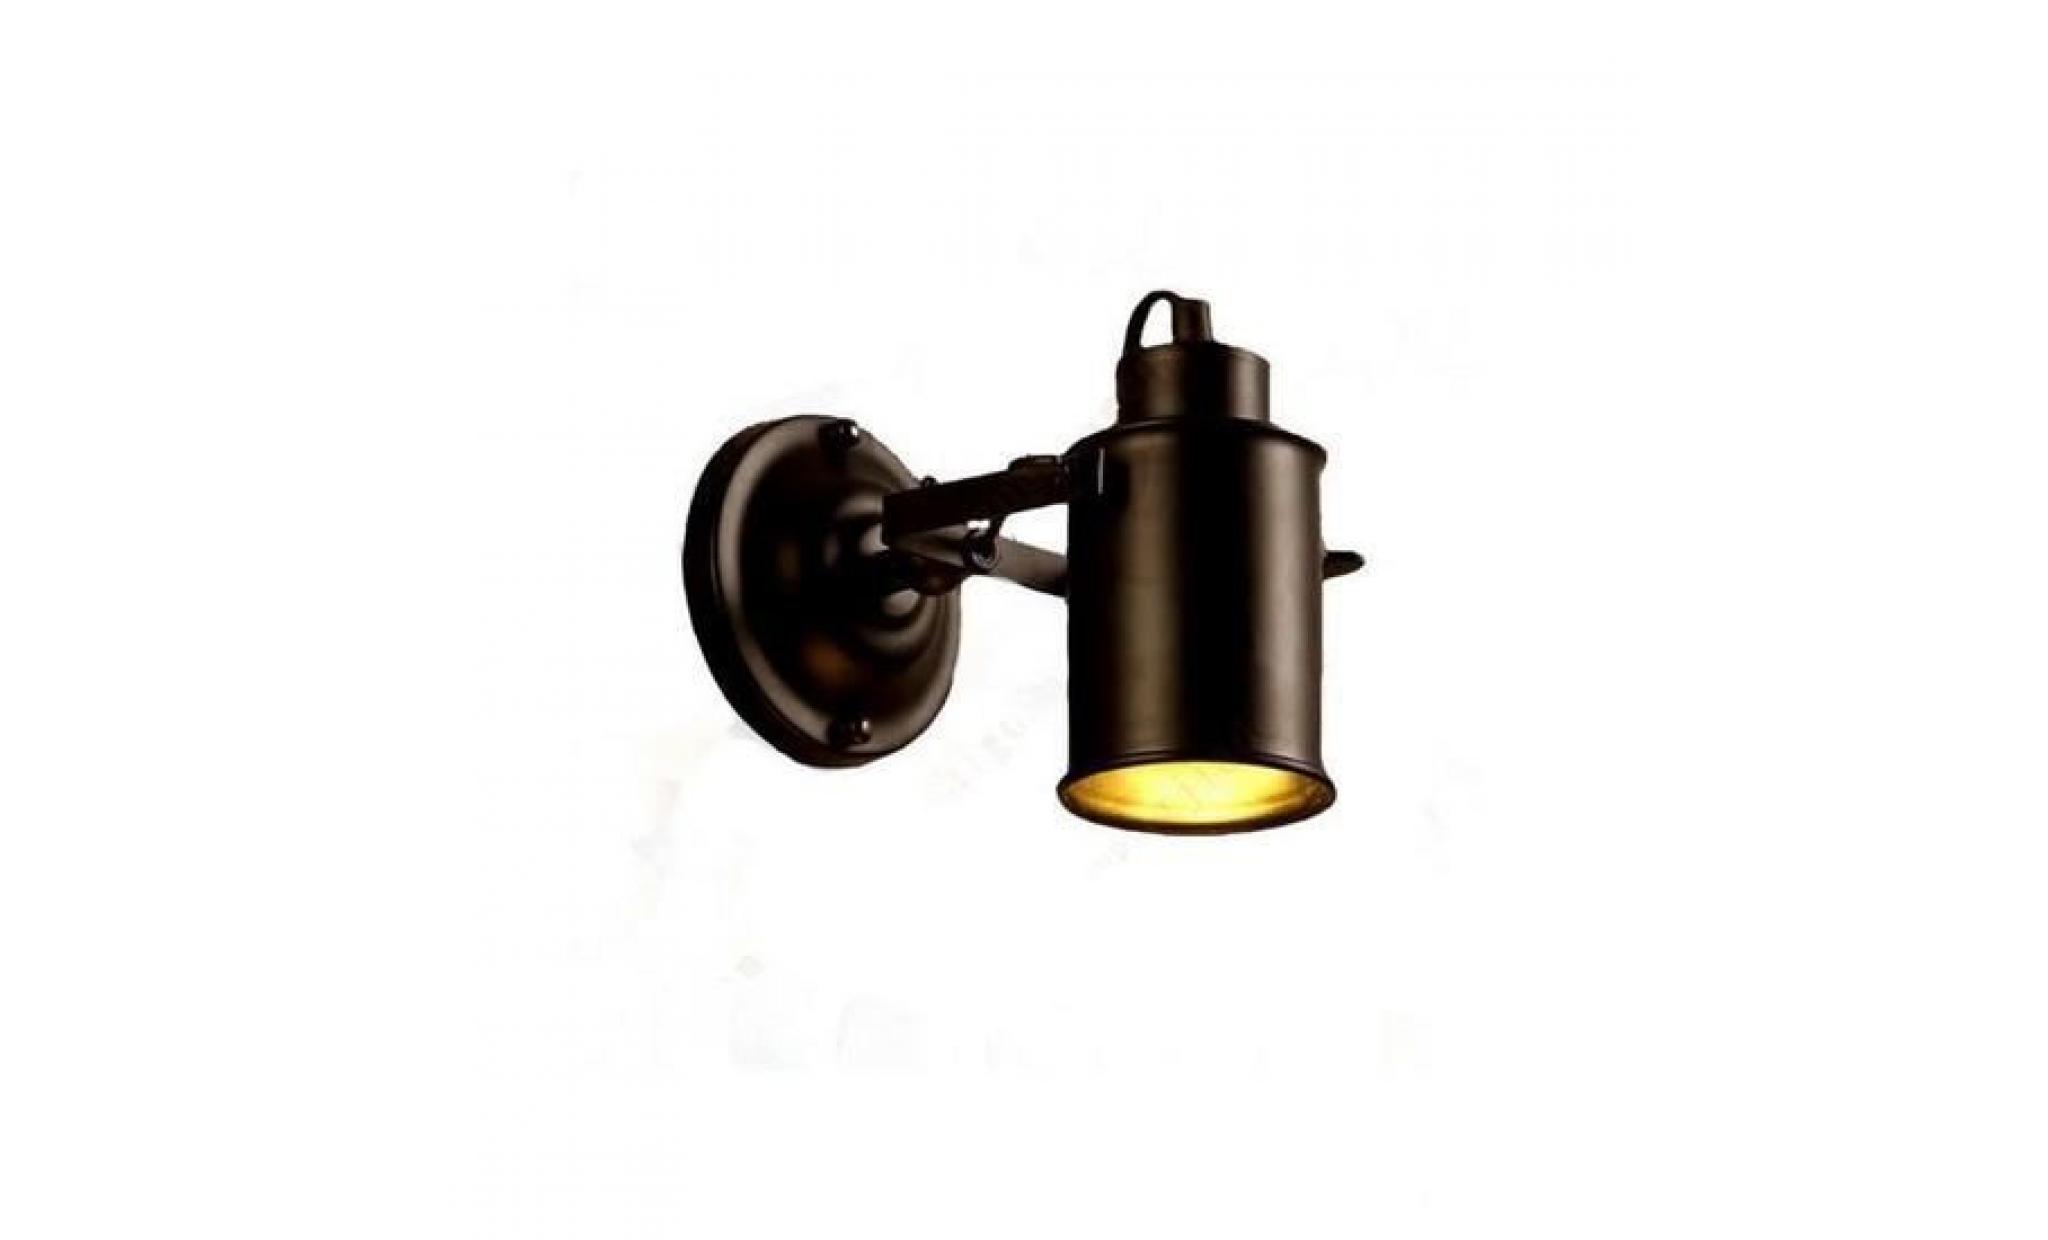 applique rétro lampe murale led industriel mur de feu lampe tête de lit ajustable pour couloir/chambre/restaurant+cadeau porte clés pas cher